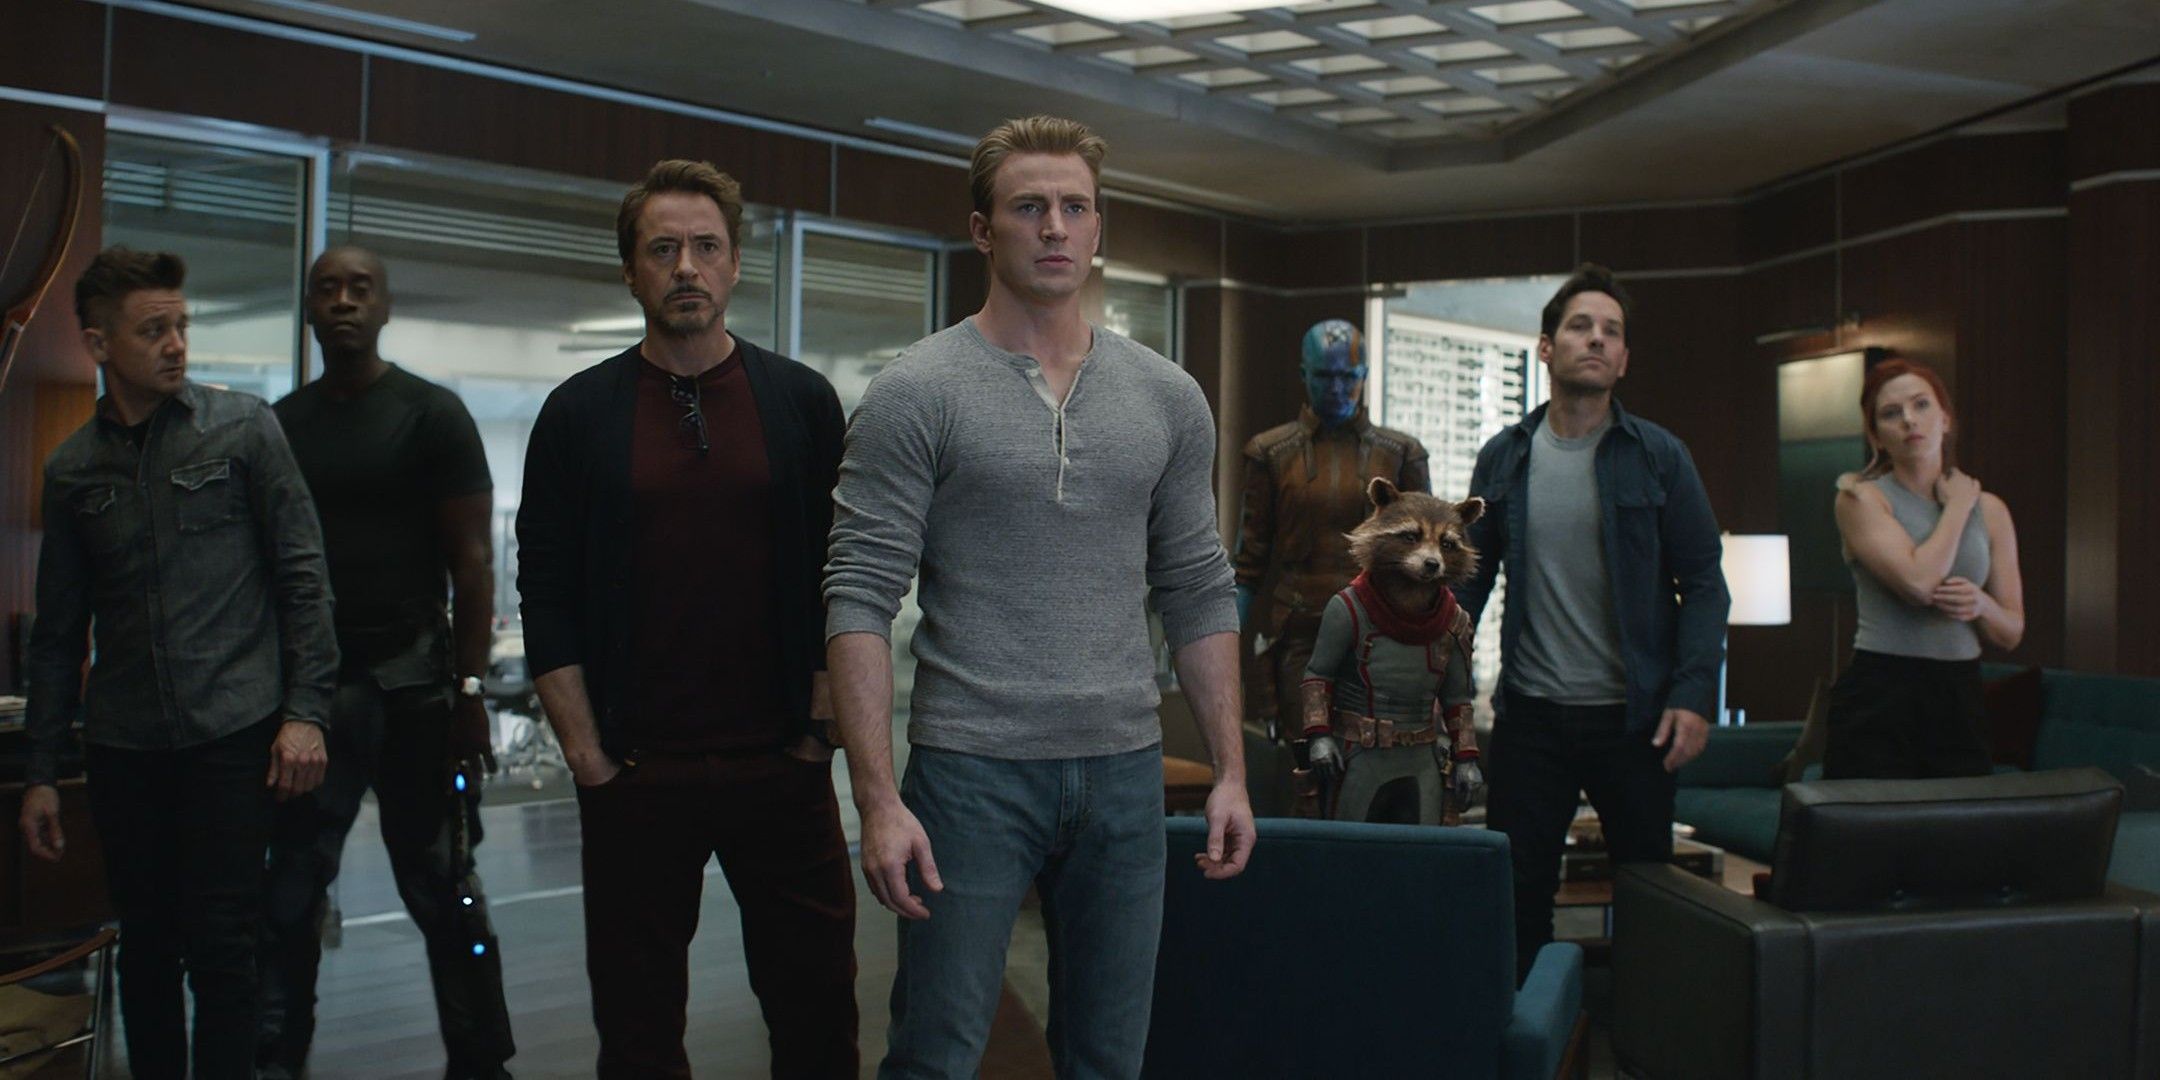 Avengers Endgame main cast